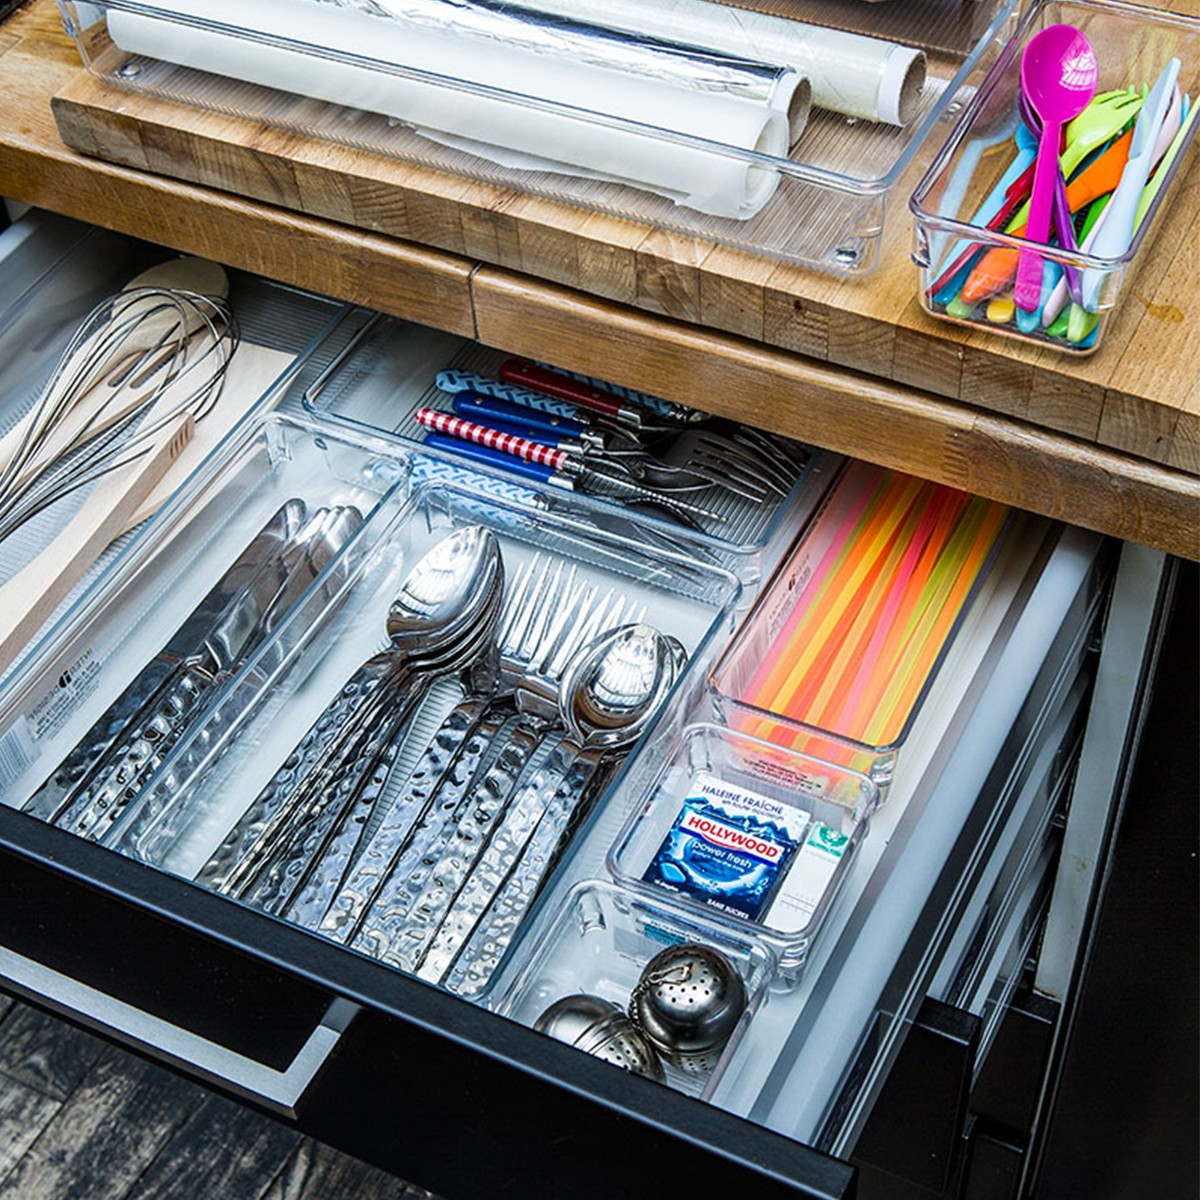 Séparateur de tiroir couverts acrylique - Rangement cuisine - ON RANGE TOUT